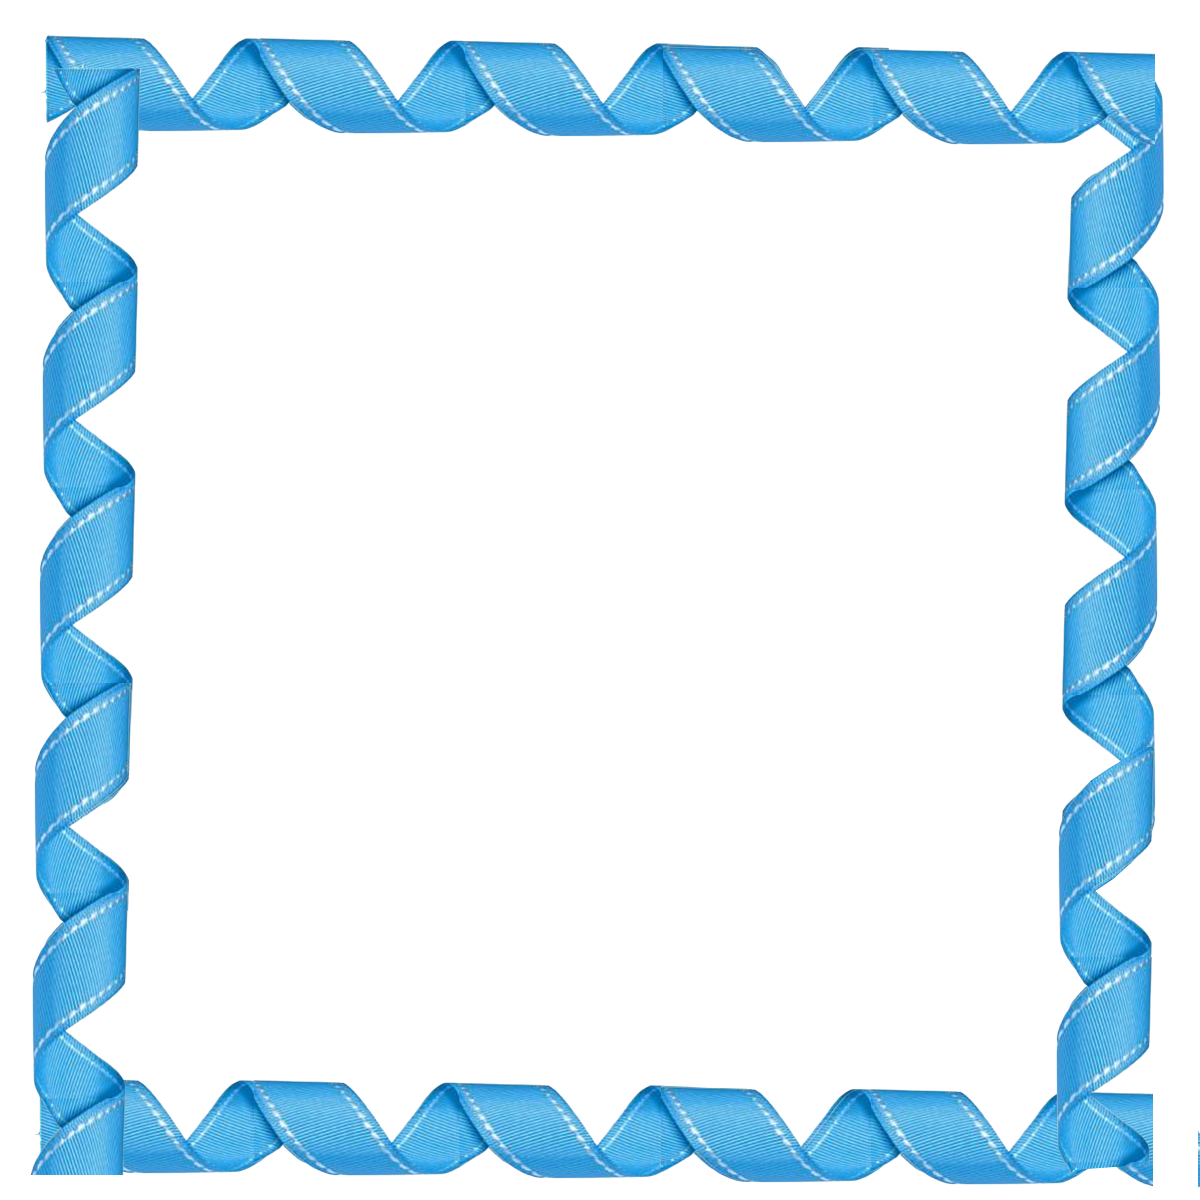 الإطار الأزرق PNG صورة خلفية